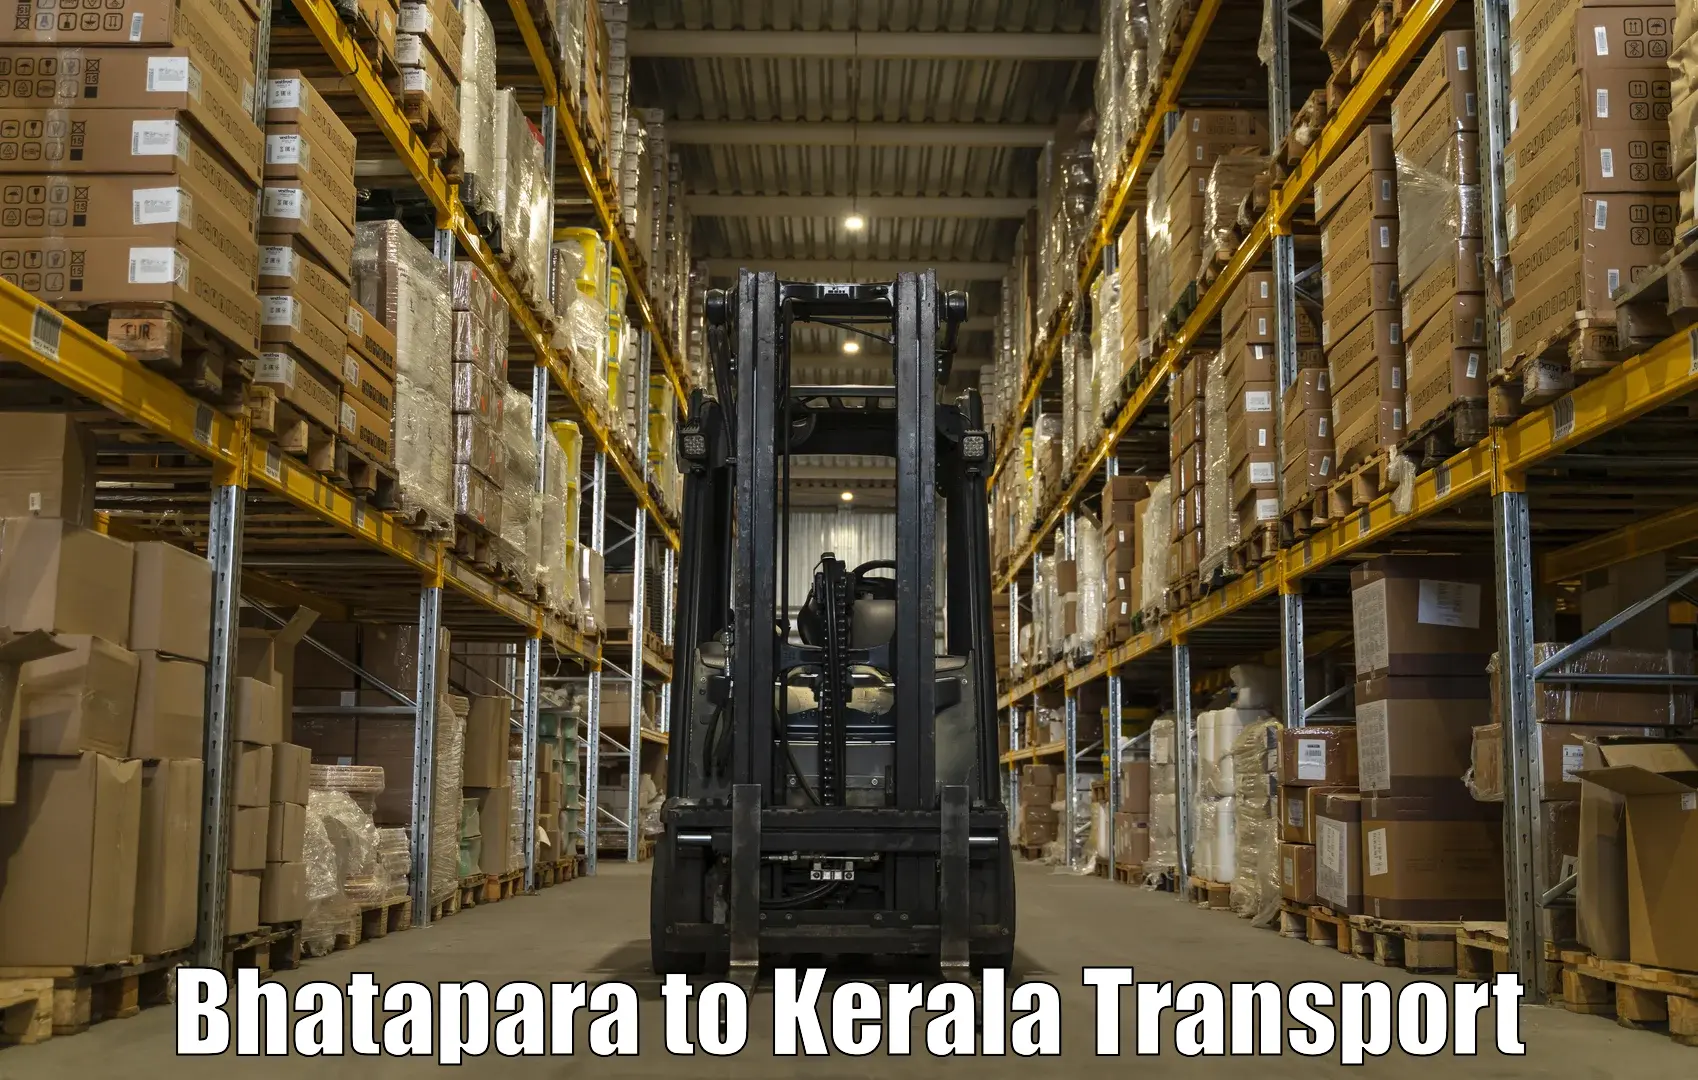 Cargo transportation services Bhatapara to Parippally